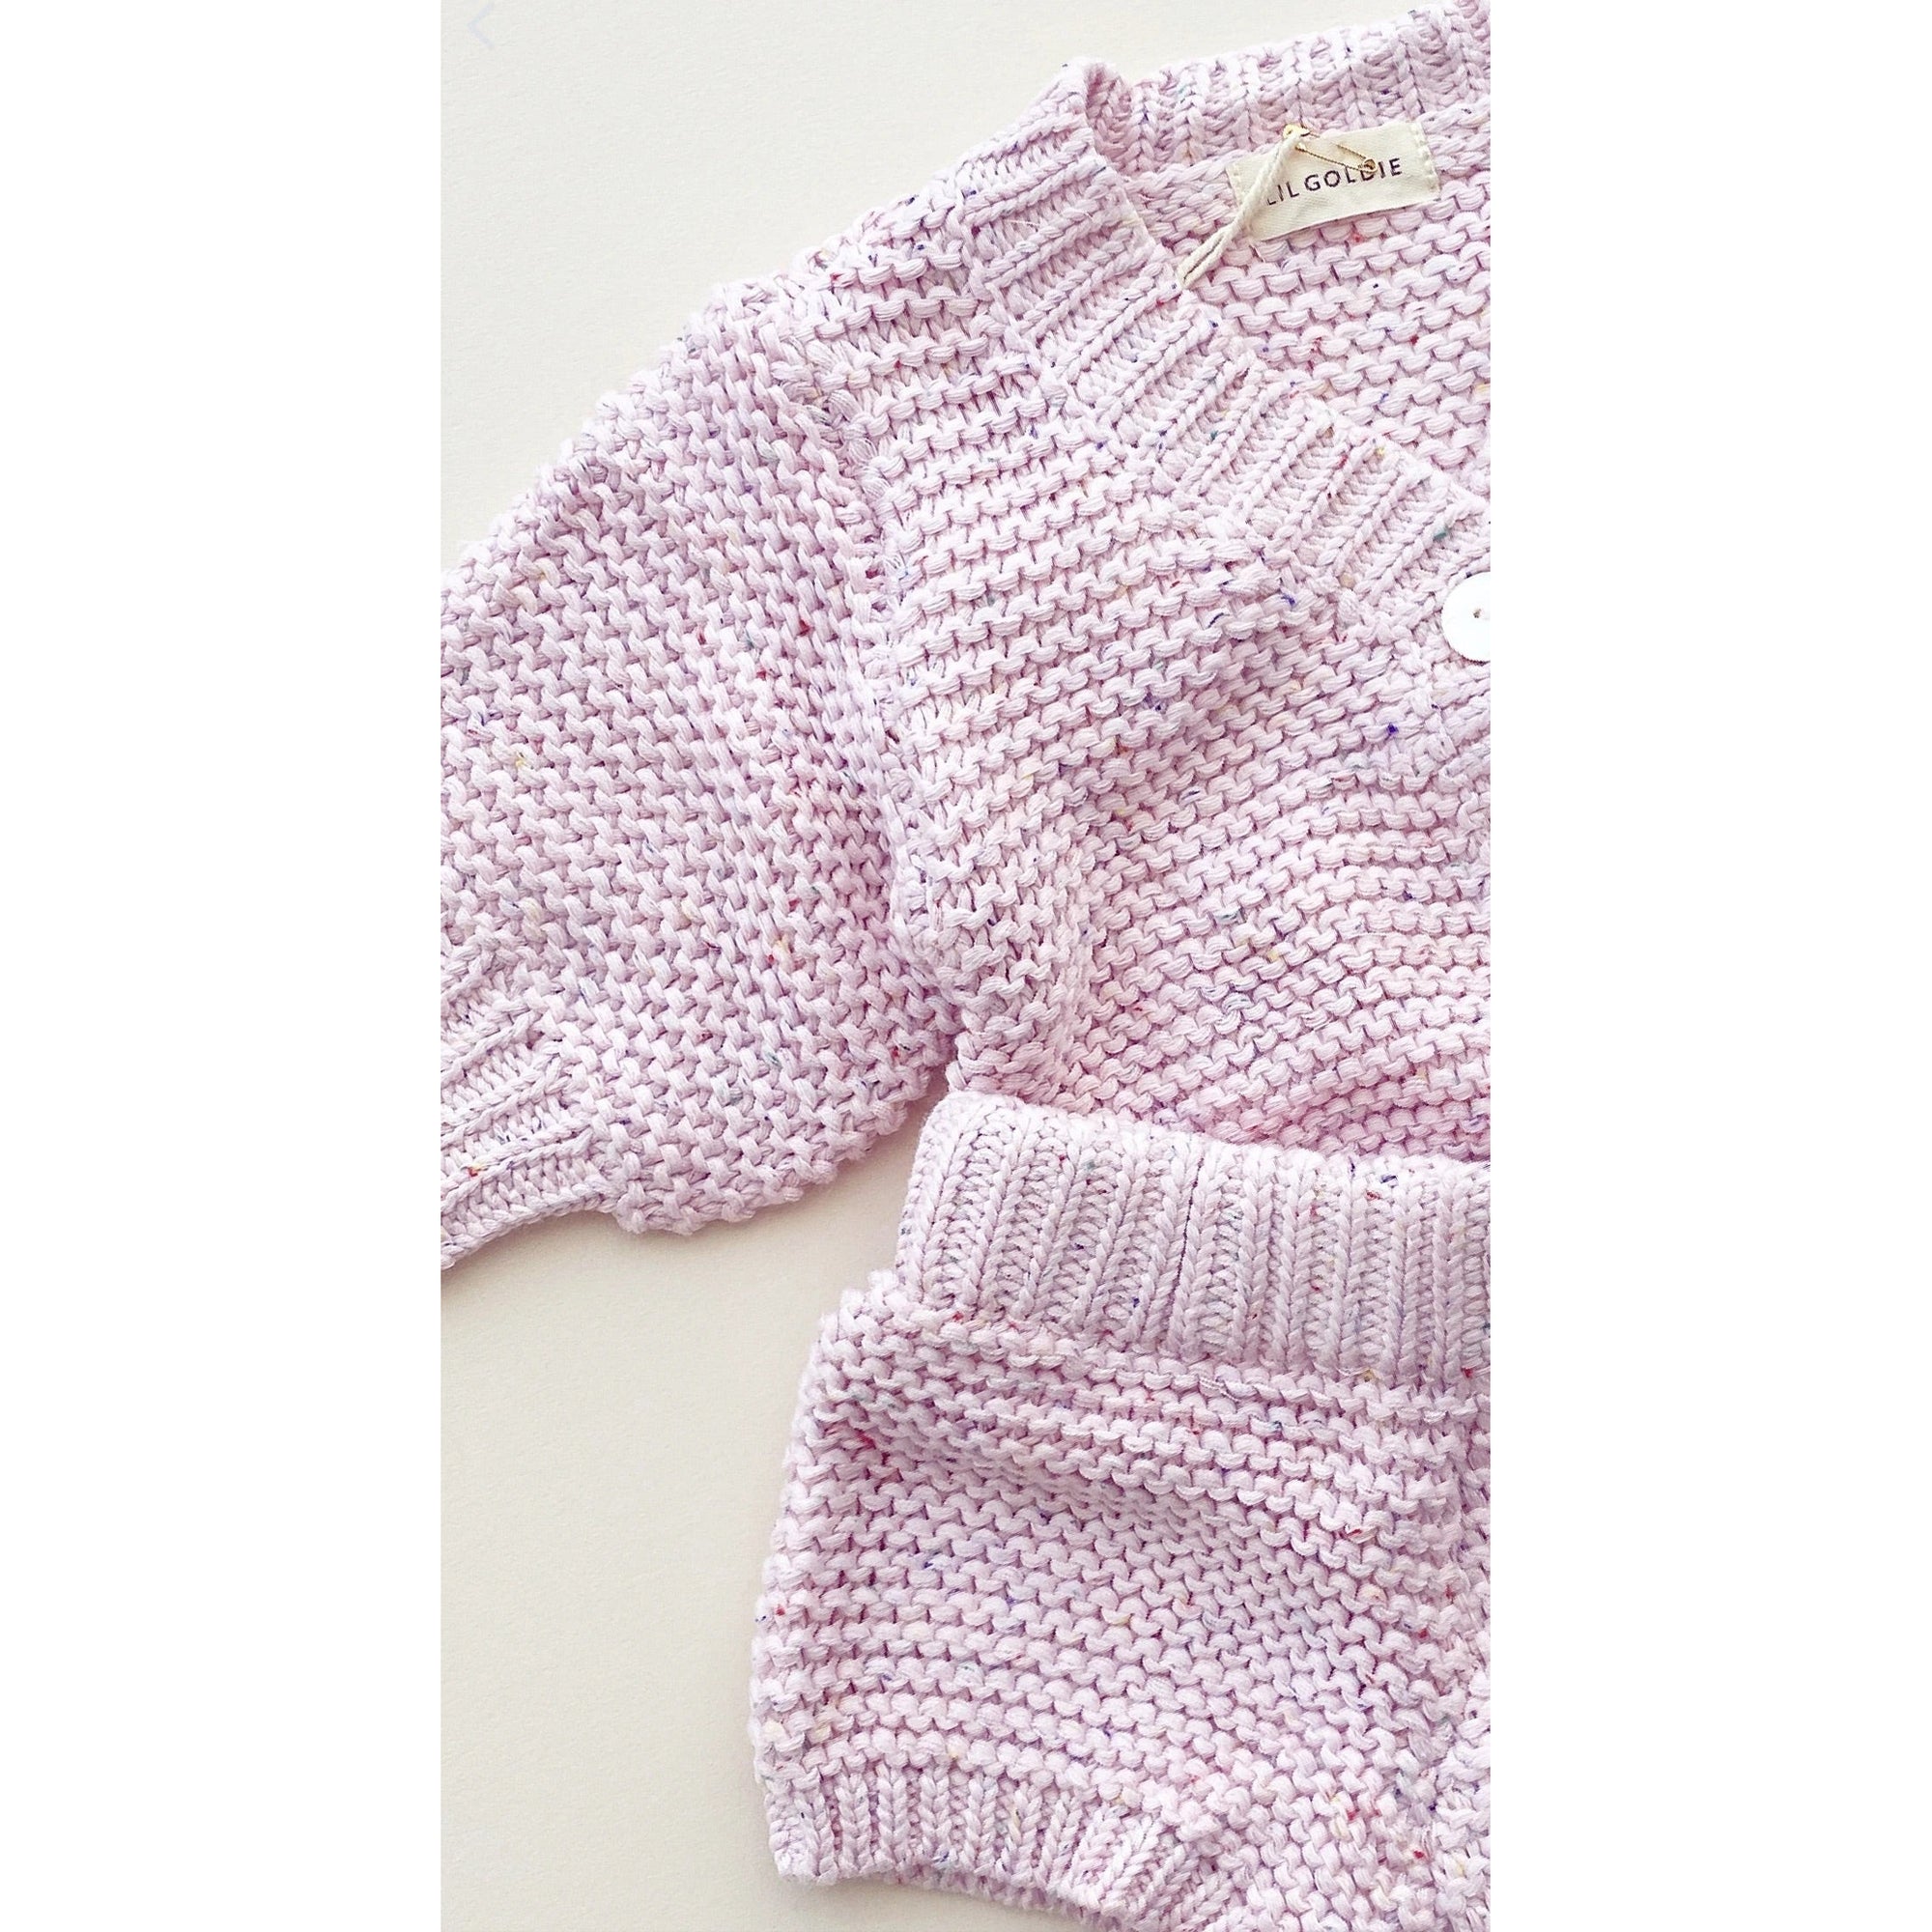 alba knit set in pink confetti